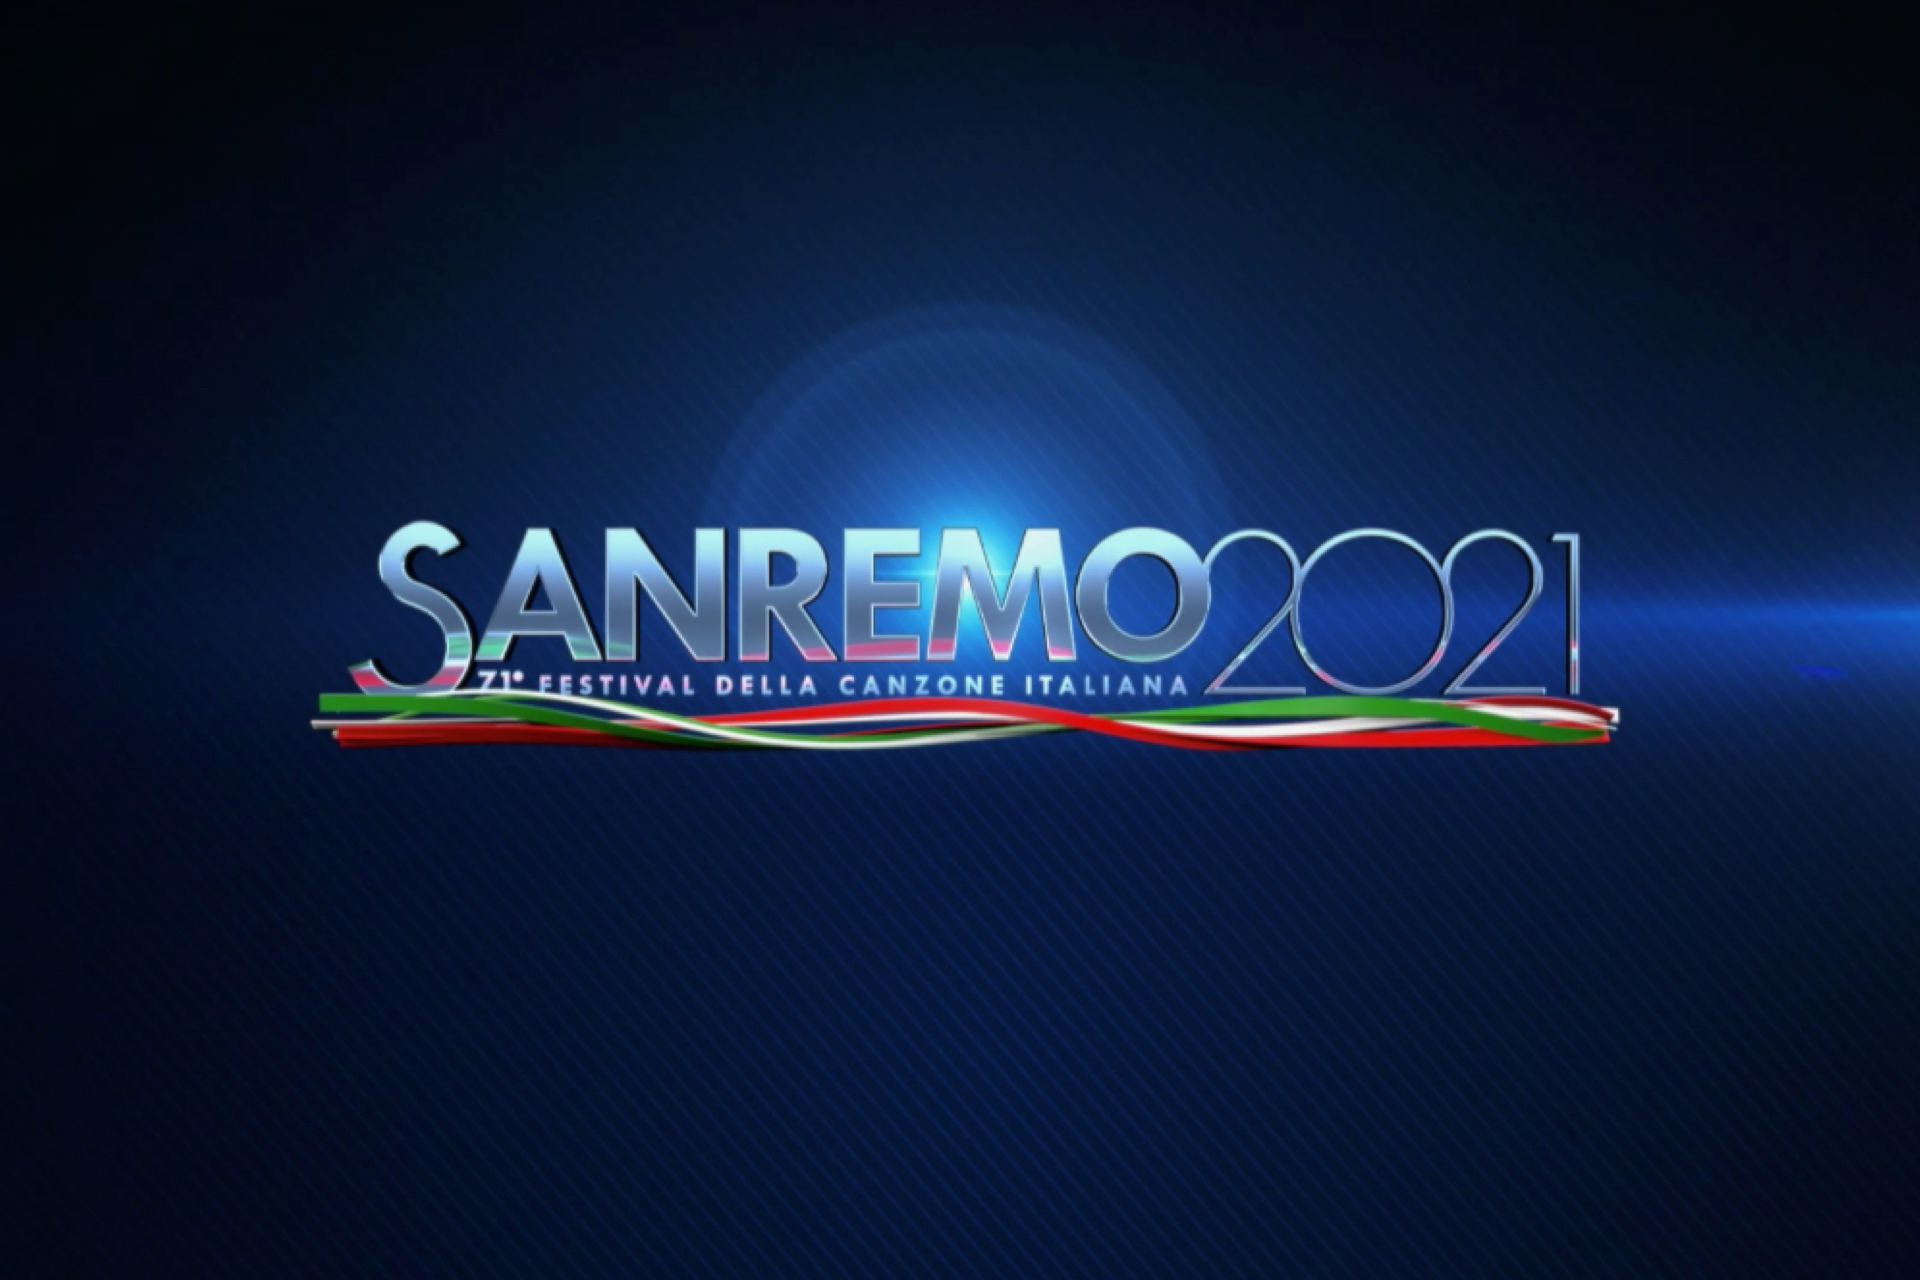 Sanremo 2021 logo